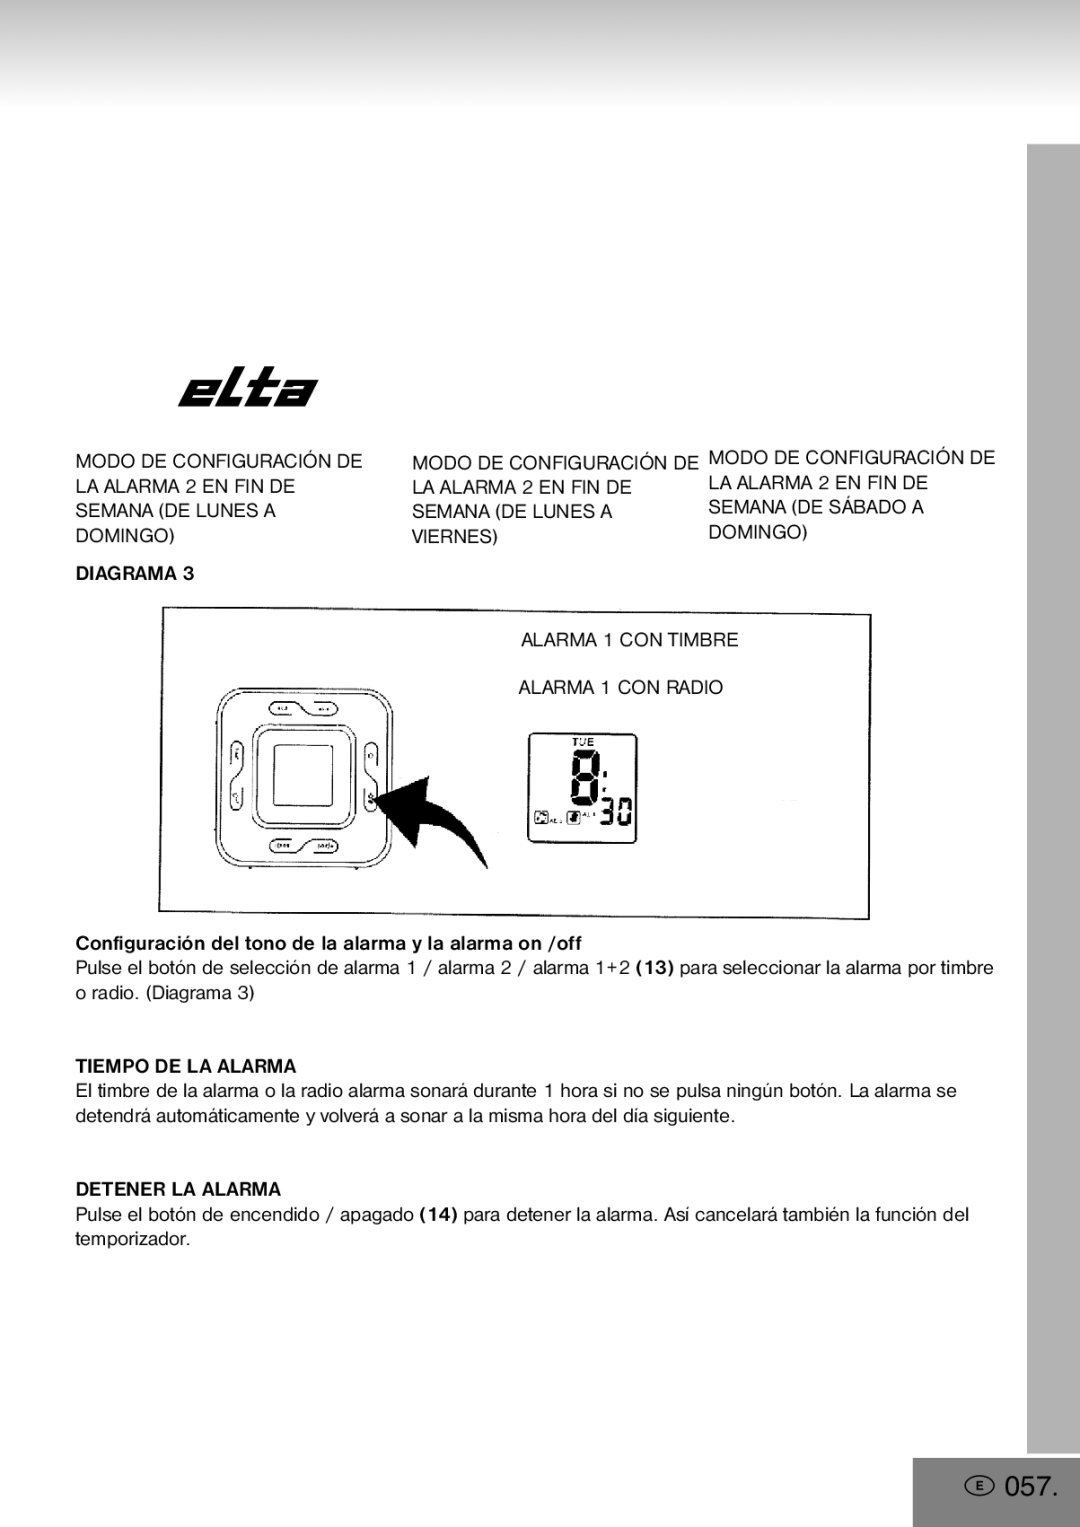 Elta 4556 manual 057, Viernes Domingo Alarma 1 CON Timbre Alarma 1 CON Radio, Tiempo DE LA Alarma, Detener LA Alarma 